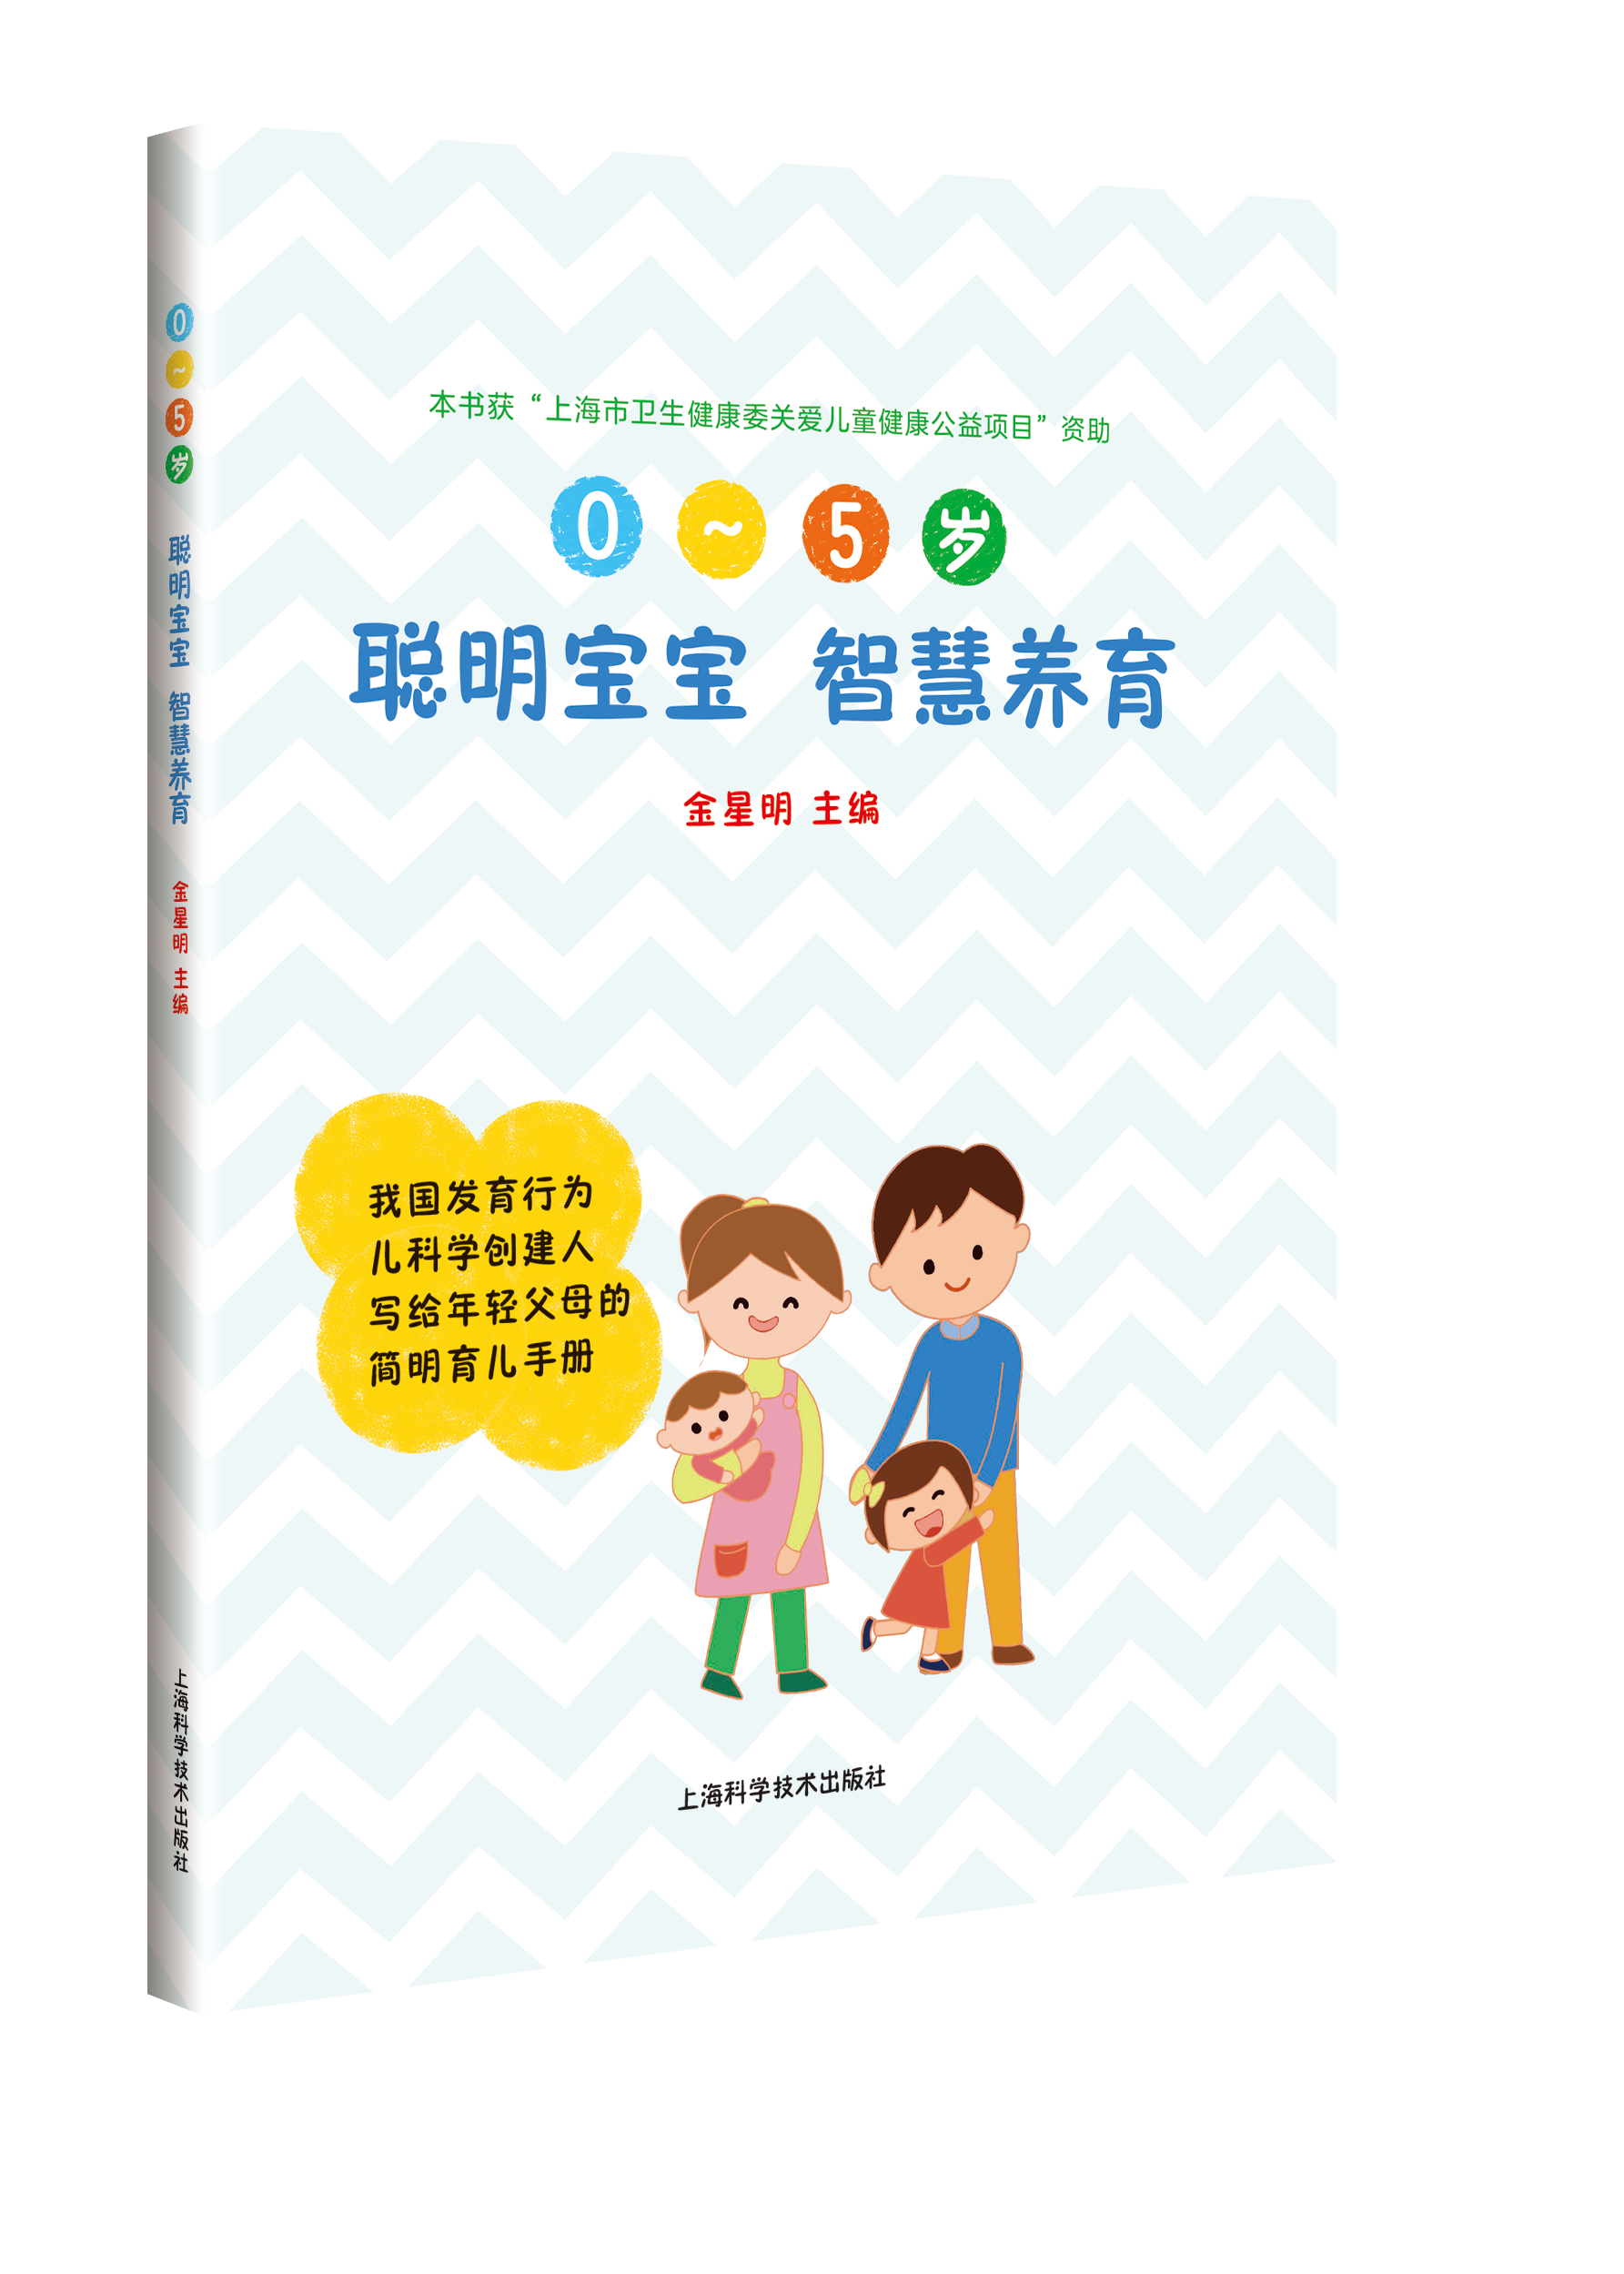 2020上海书展：健康科普书籍抢先看